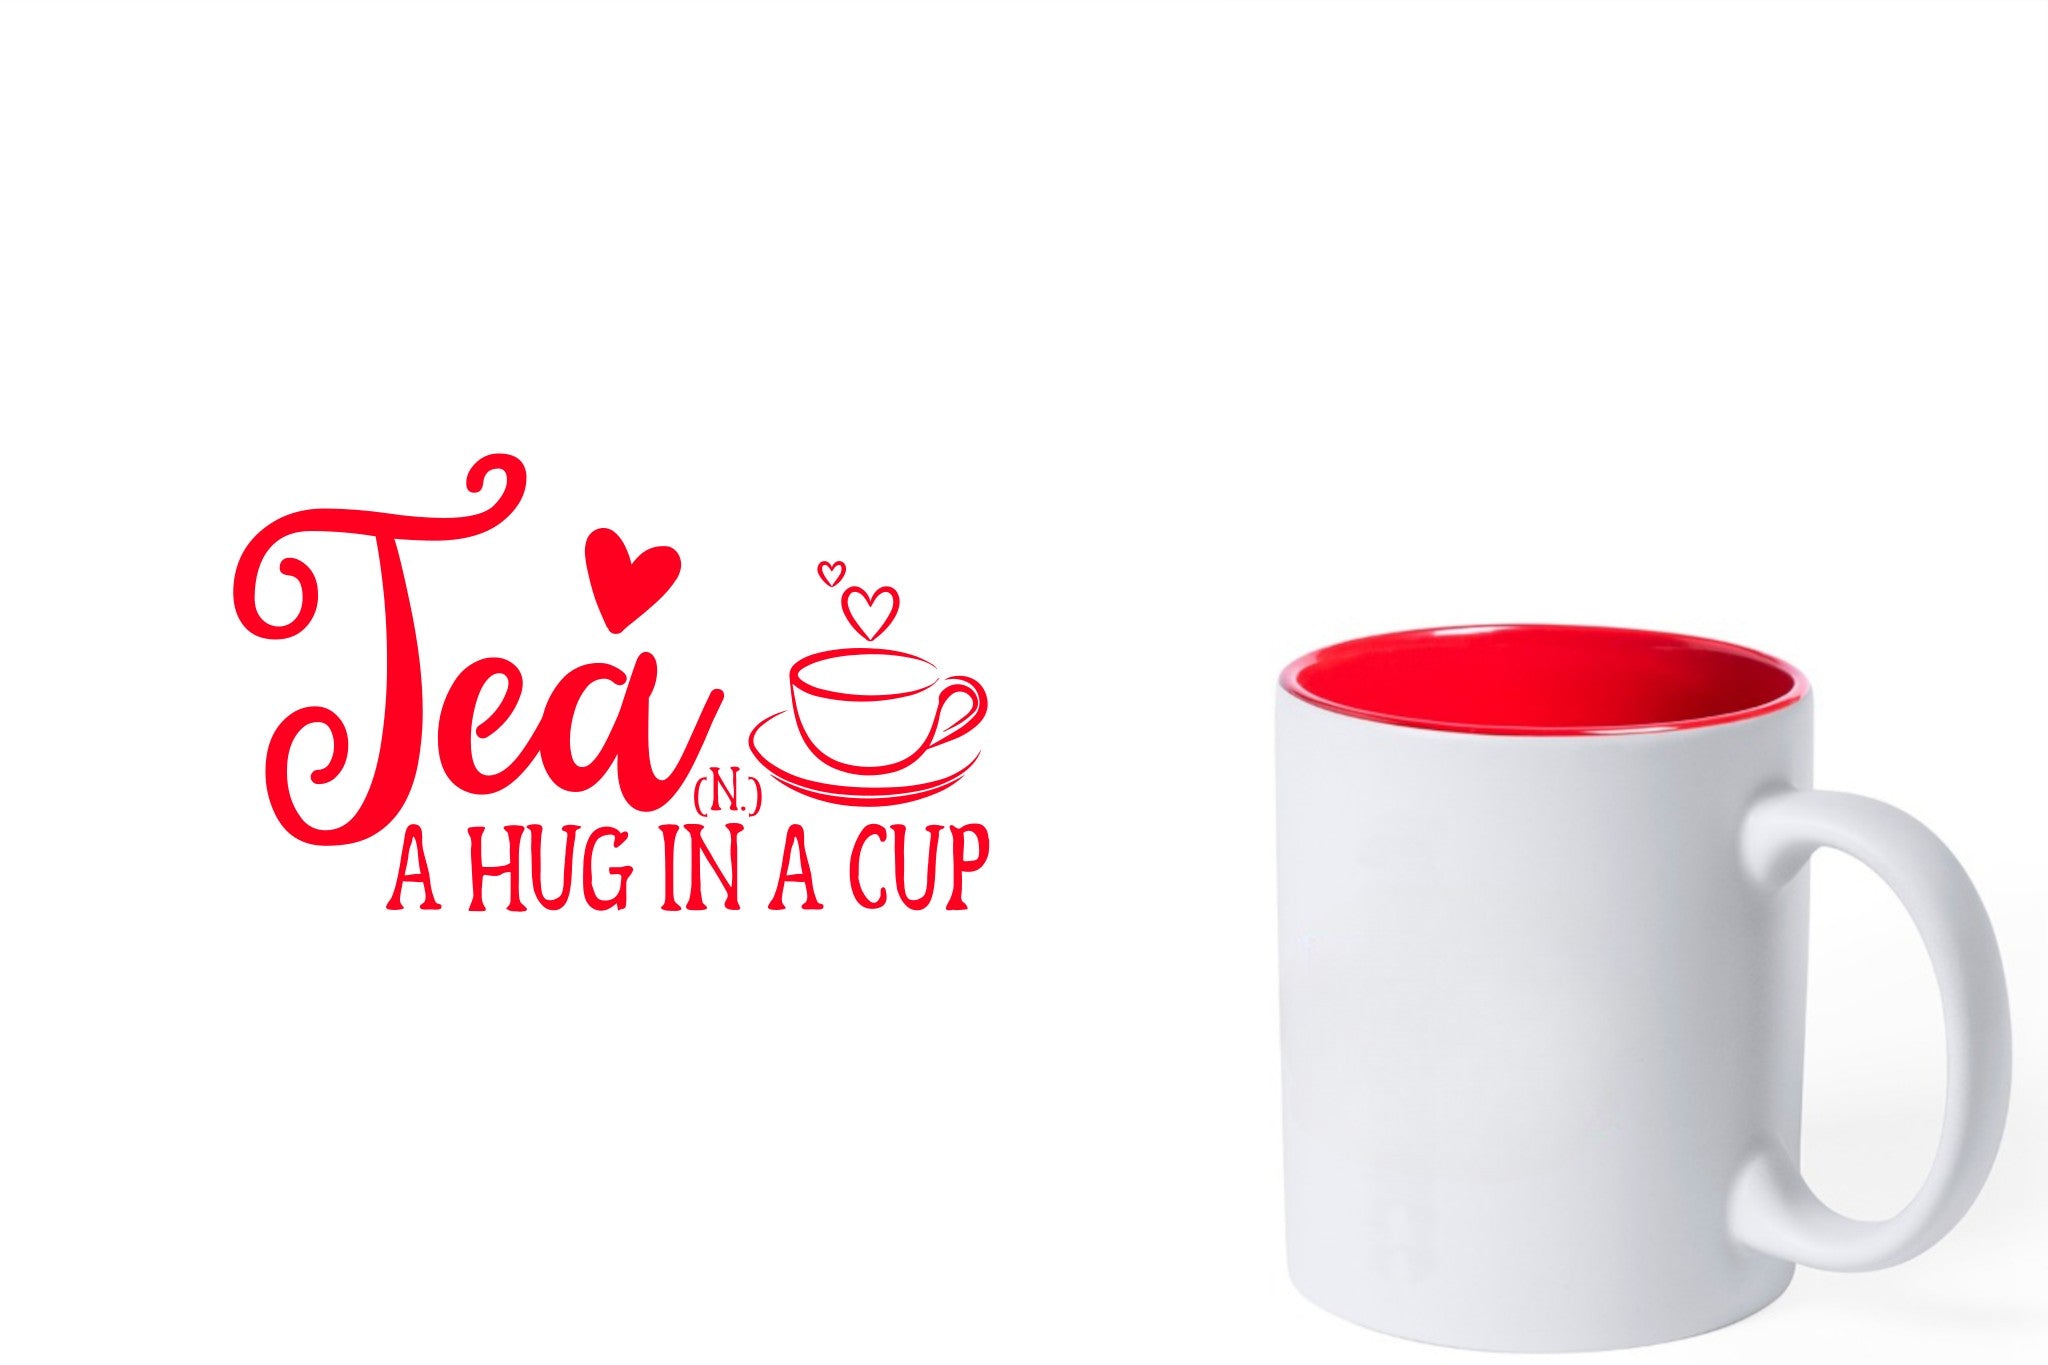 witte keramische mok met rode gravure  'Tea and a hug in a cup'.